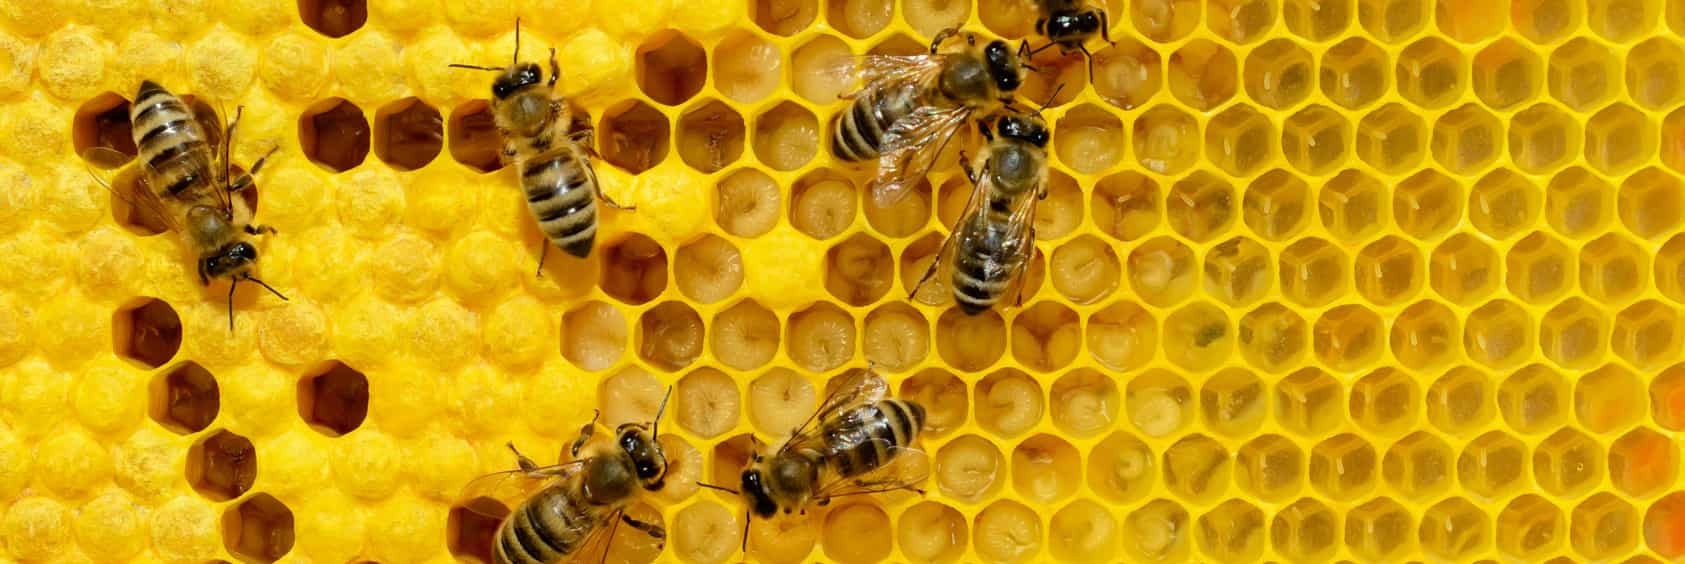 Bienenzucht Brutwabe